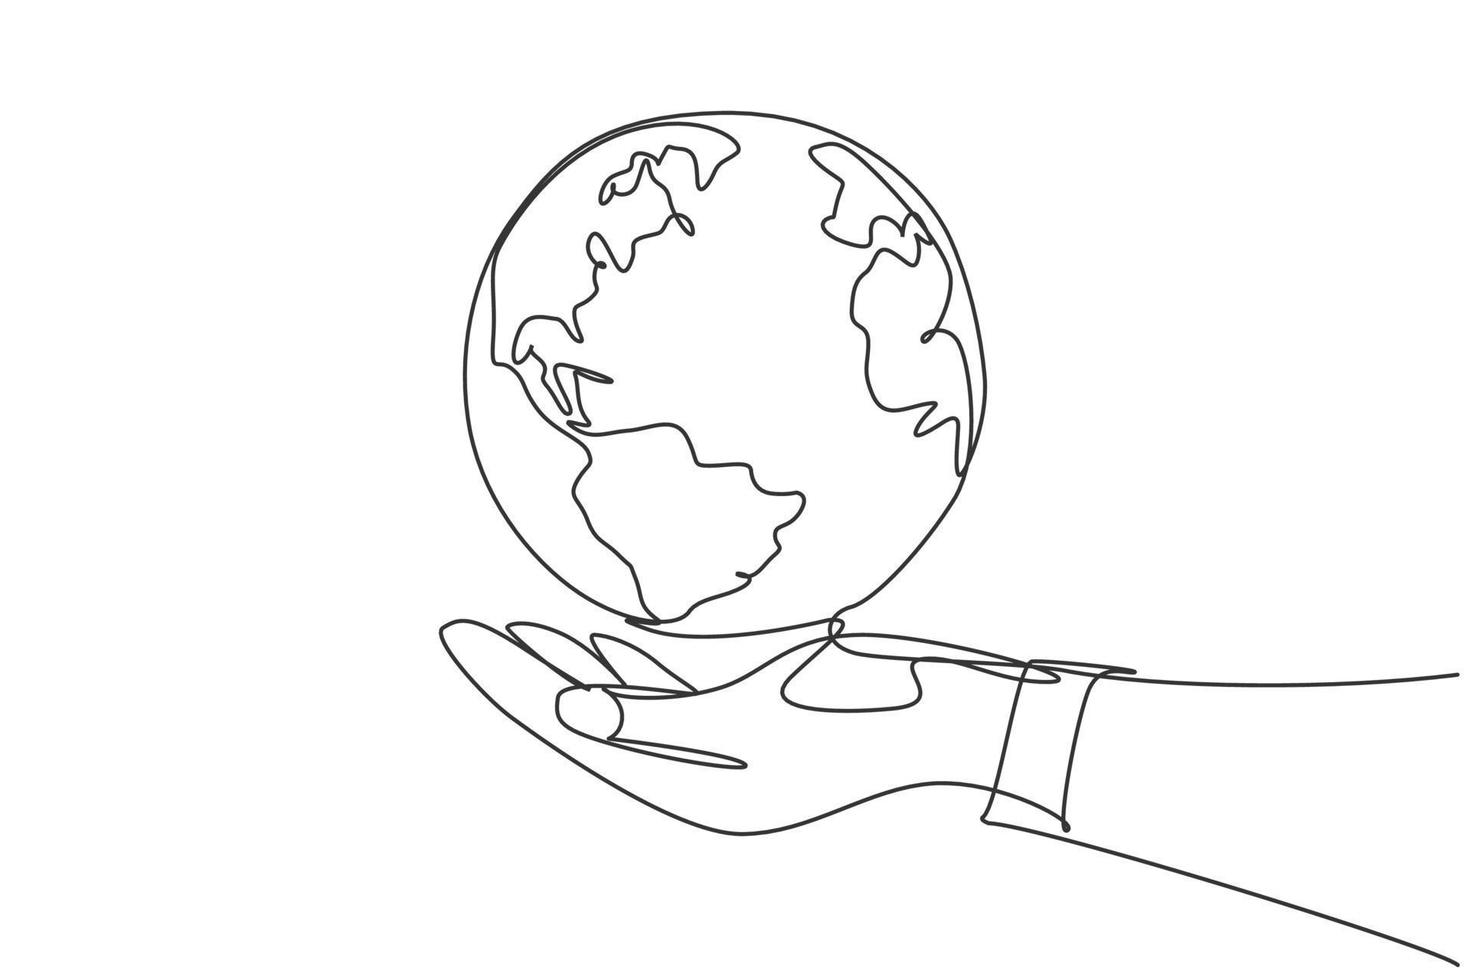 enda enradsteckning av händer håller runt jorden. jordklot ikon silhuett för världen skydda koncept. infographics, affärspresentation isolerad på vit bakgrund. design vektor grafisk illustration